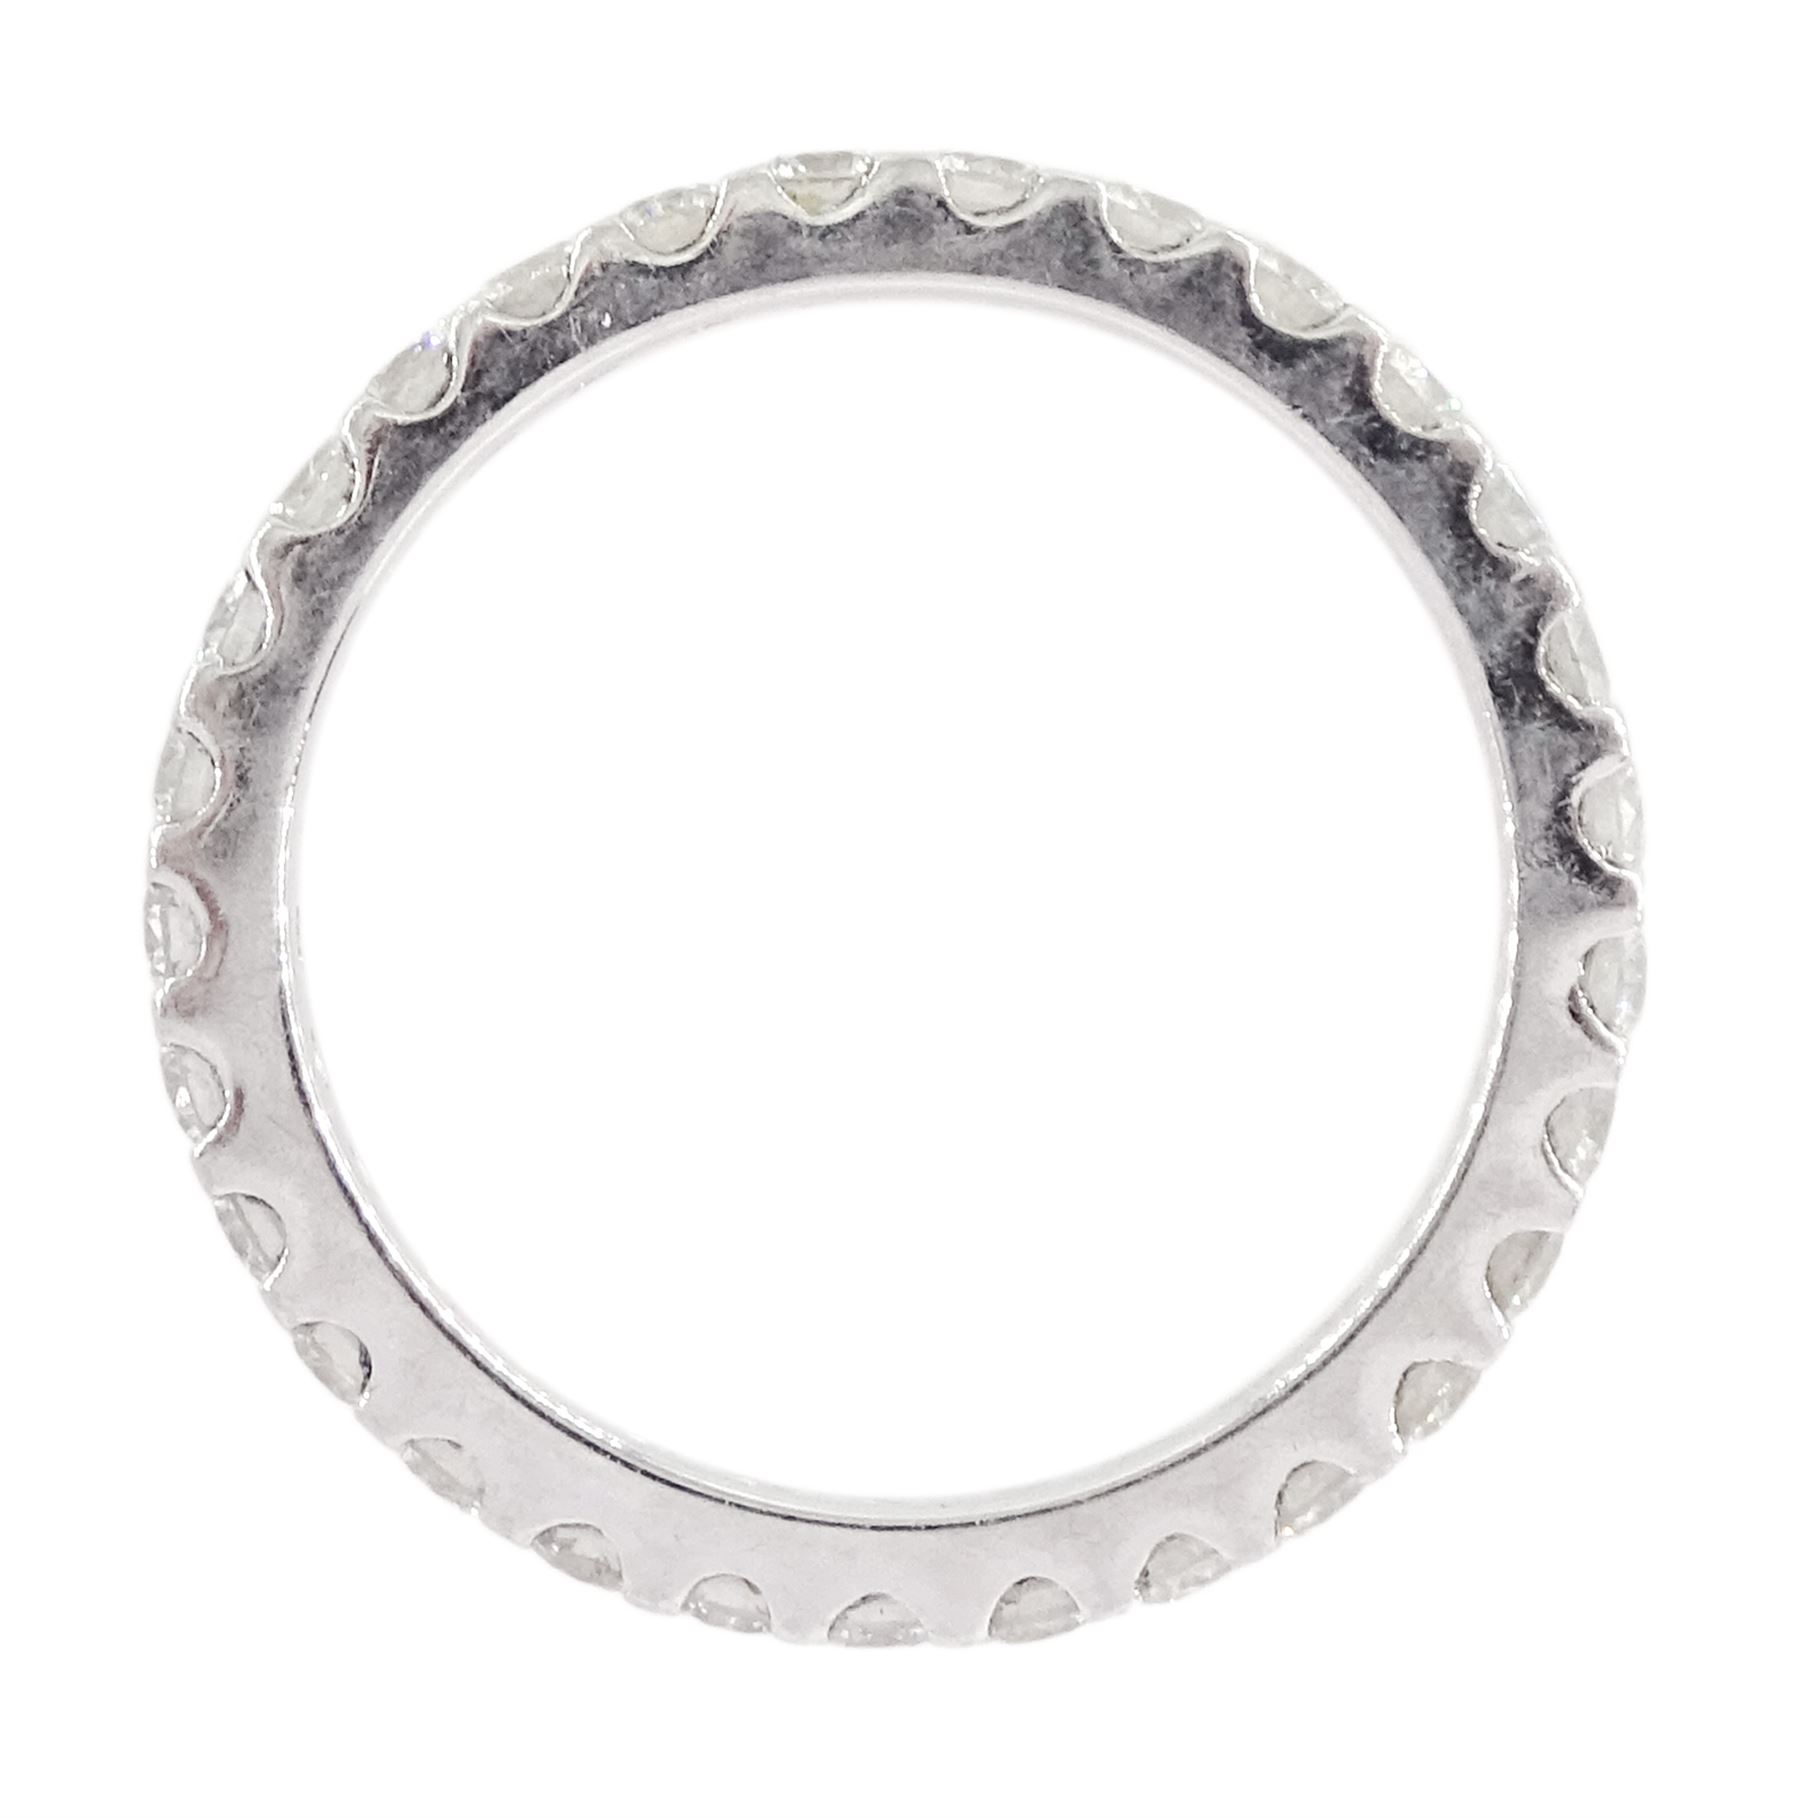 Platinum round brilliant cut diamond full eternity ring - Image 3 of 3